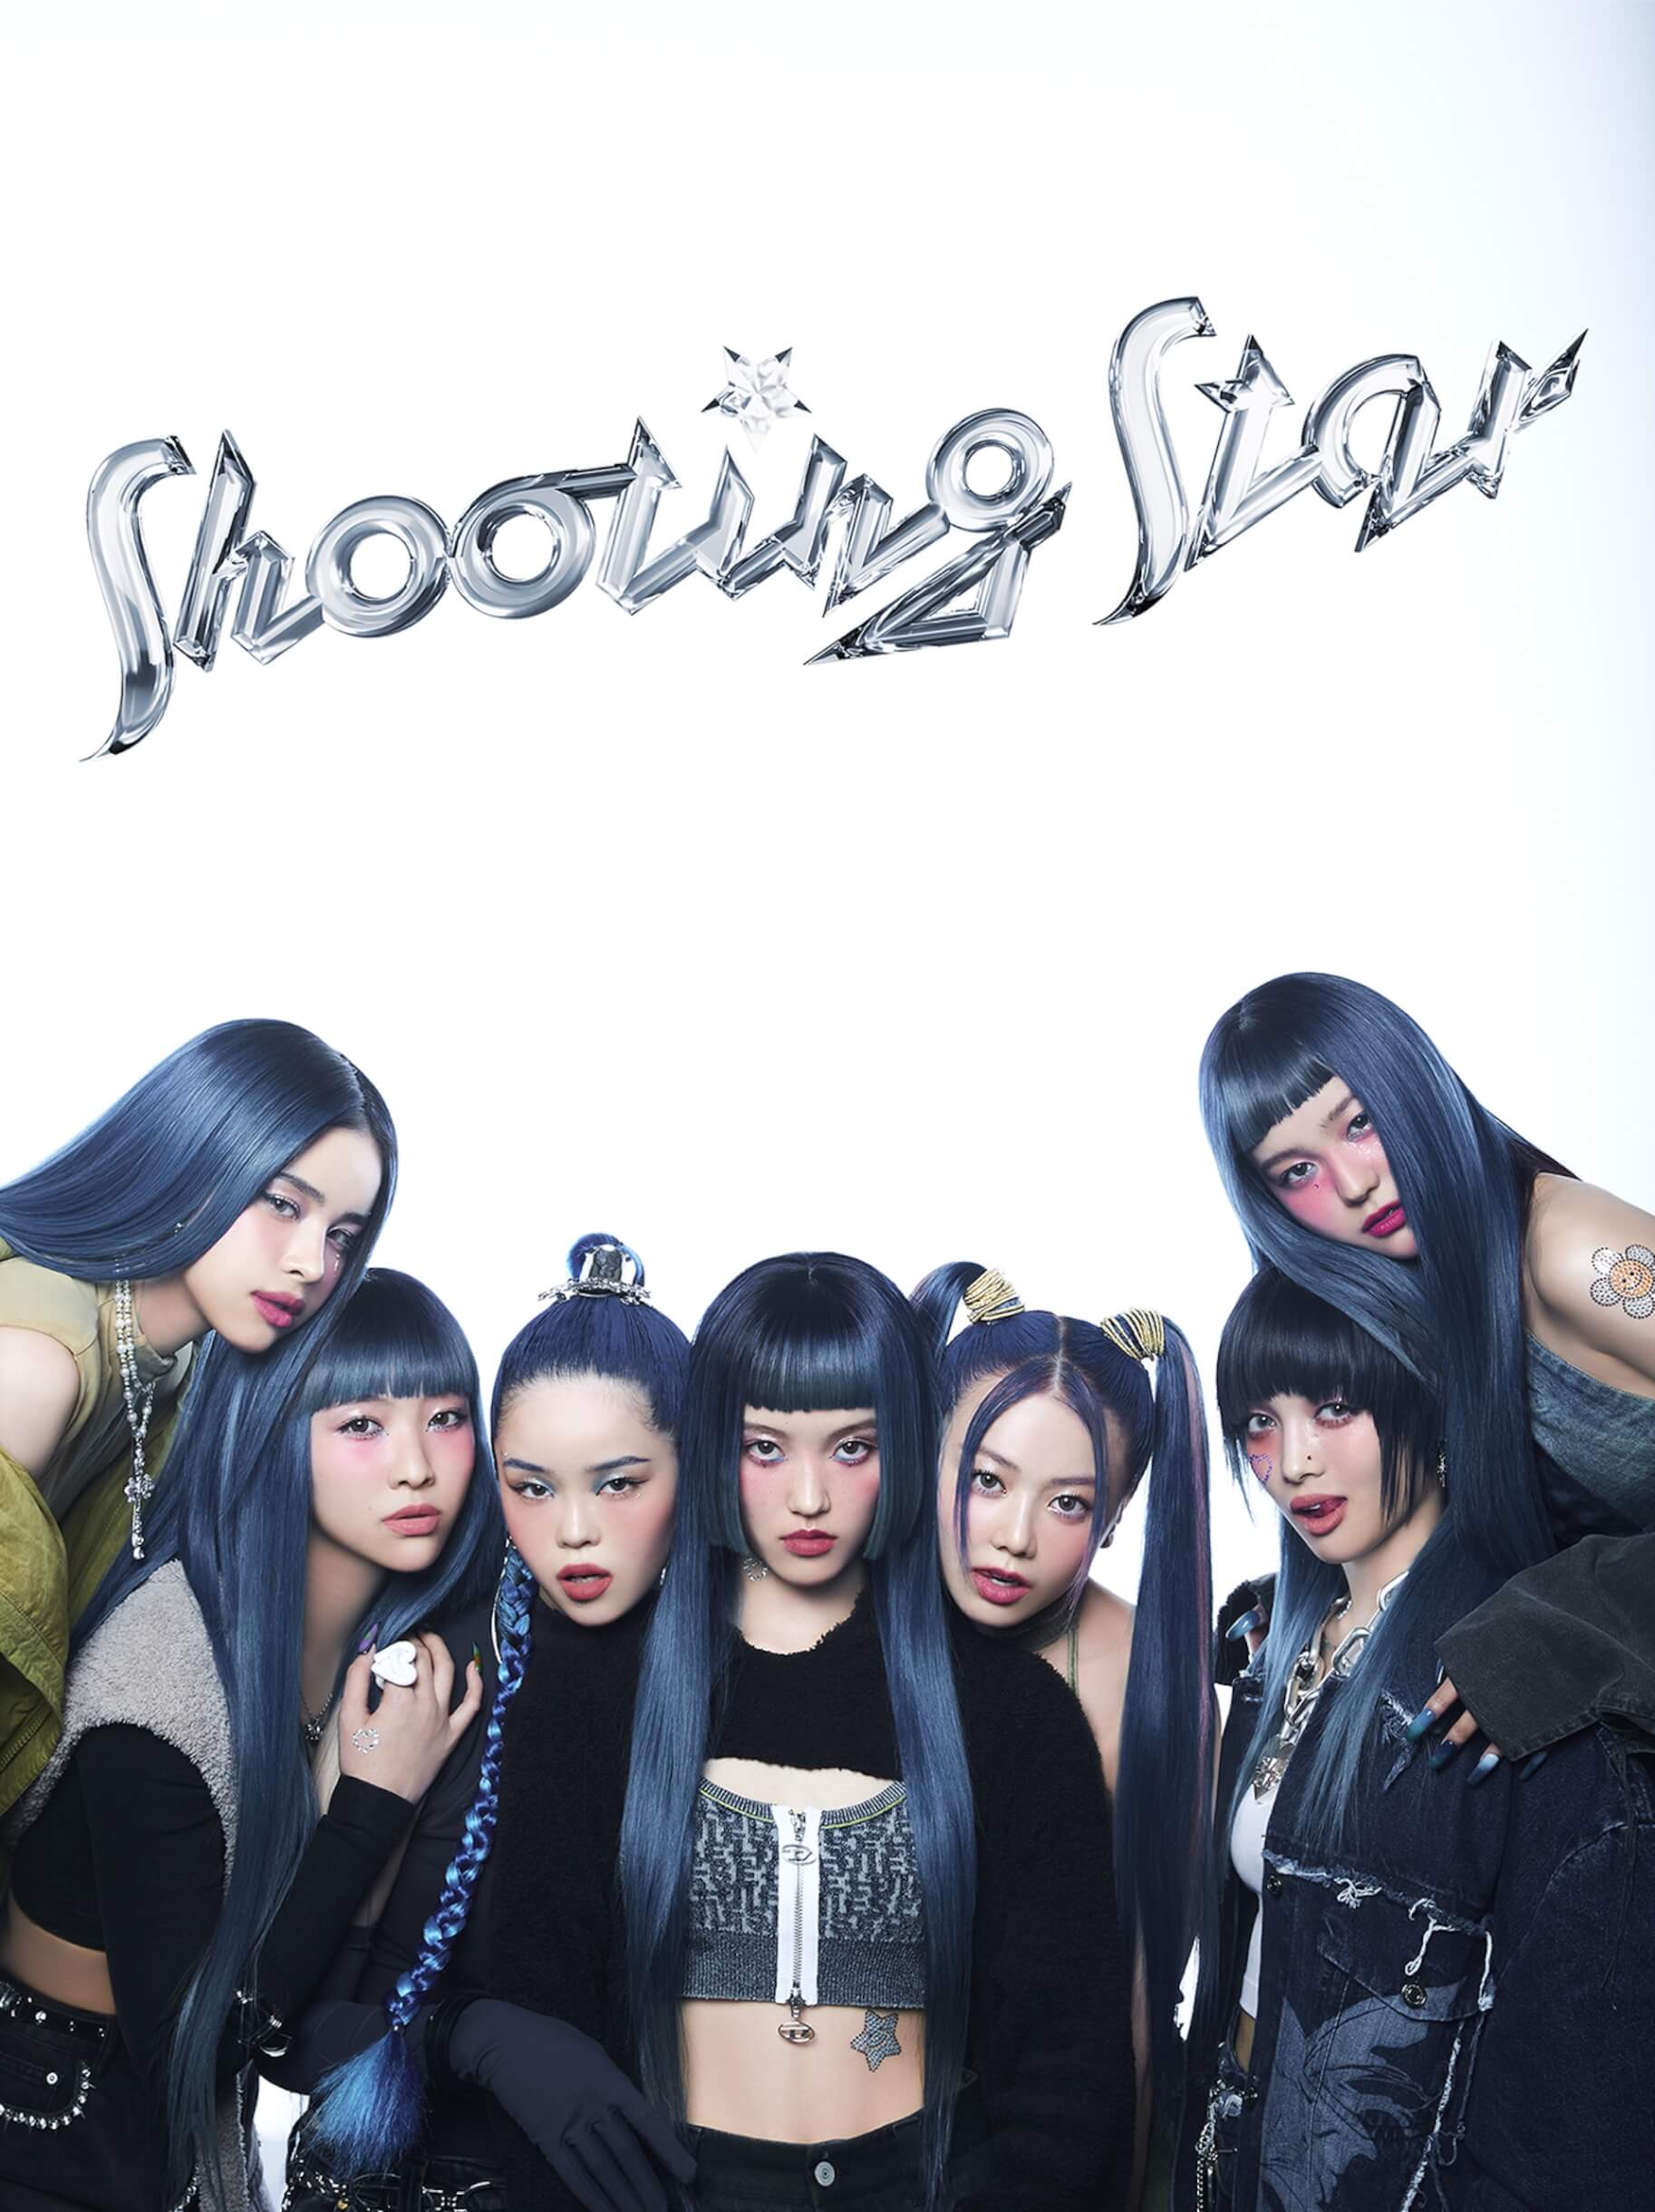 XG、メンバー全員がブルーヘアに！3rdシングル「SHOOTING STAR」が1月25日にリリース決定 music230105-xg-02